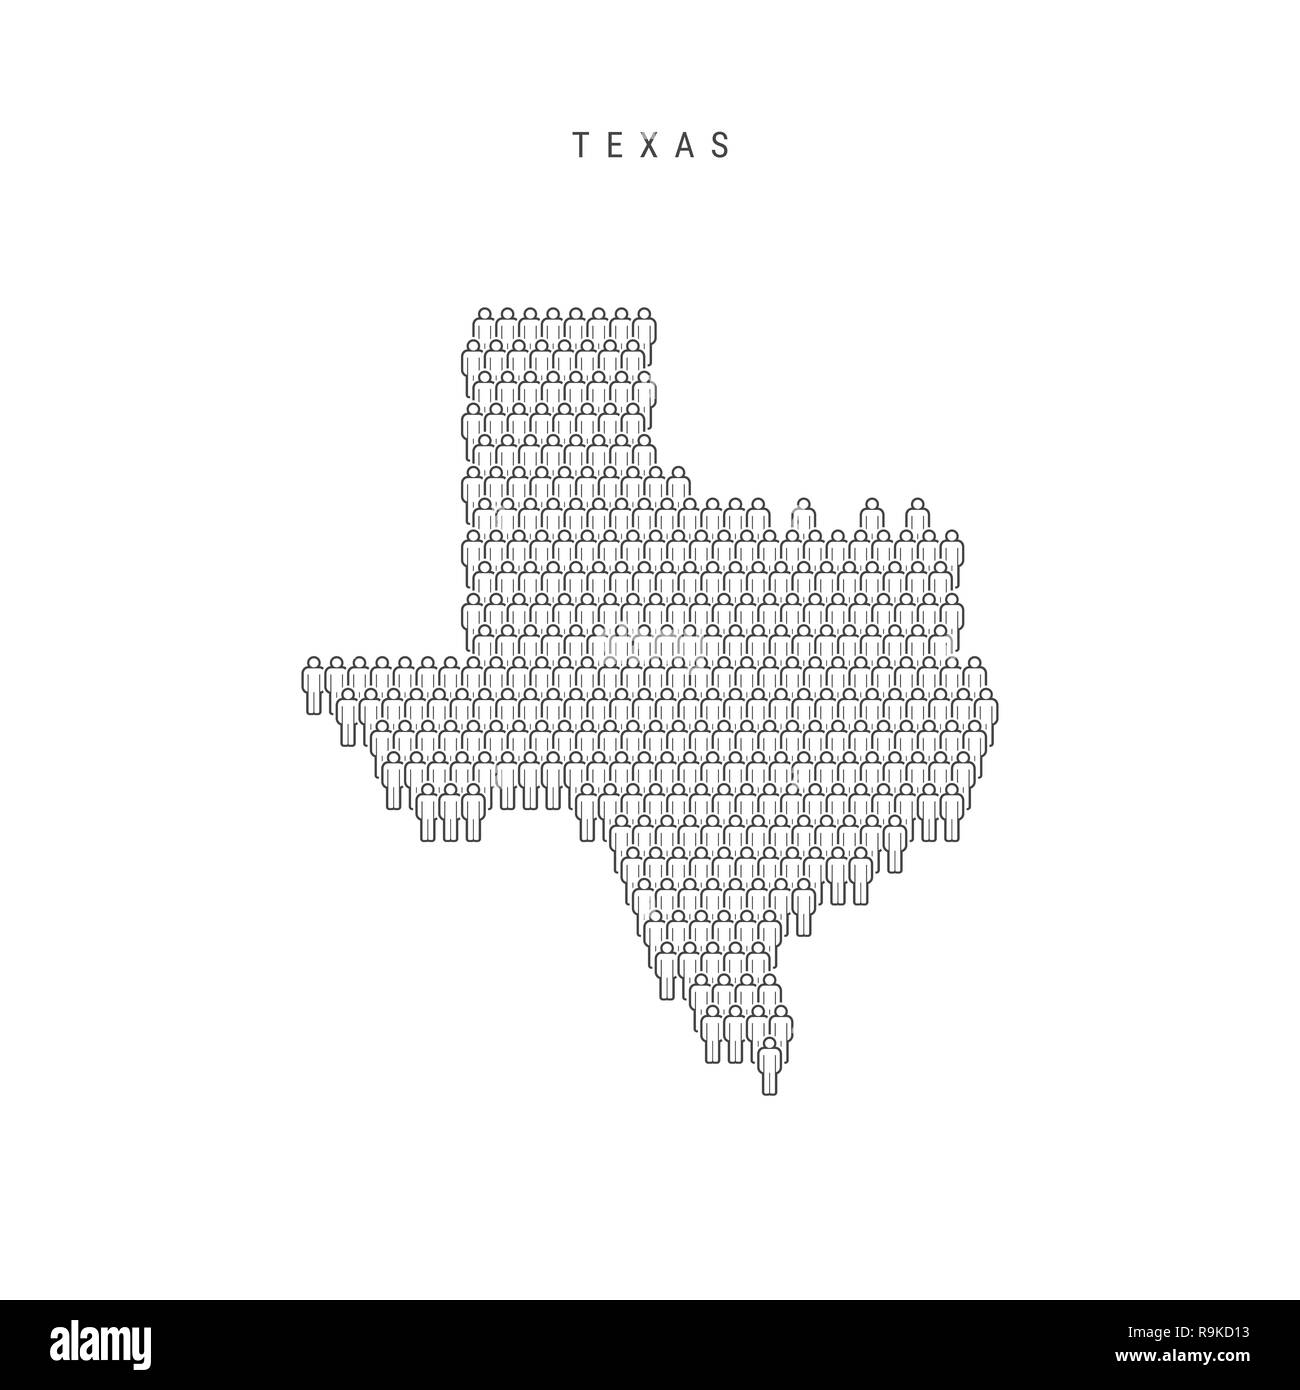 Leute Karte von Texas, US-Staat. Stilisierte Silhouette, Leute in der Form einer Karte von Texas. Texas Bevölkerung. Abbildung isoliert auf Weiß Zurück Stockfoto